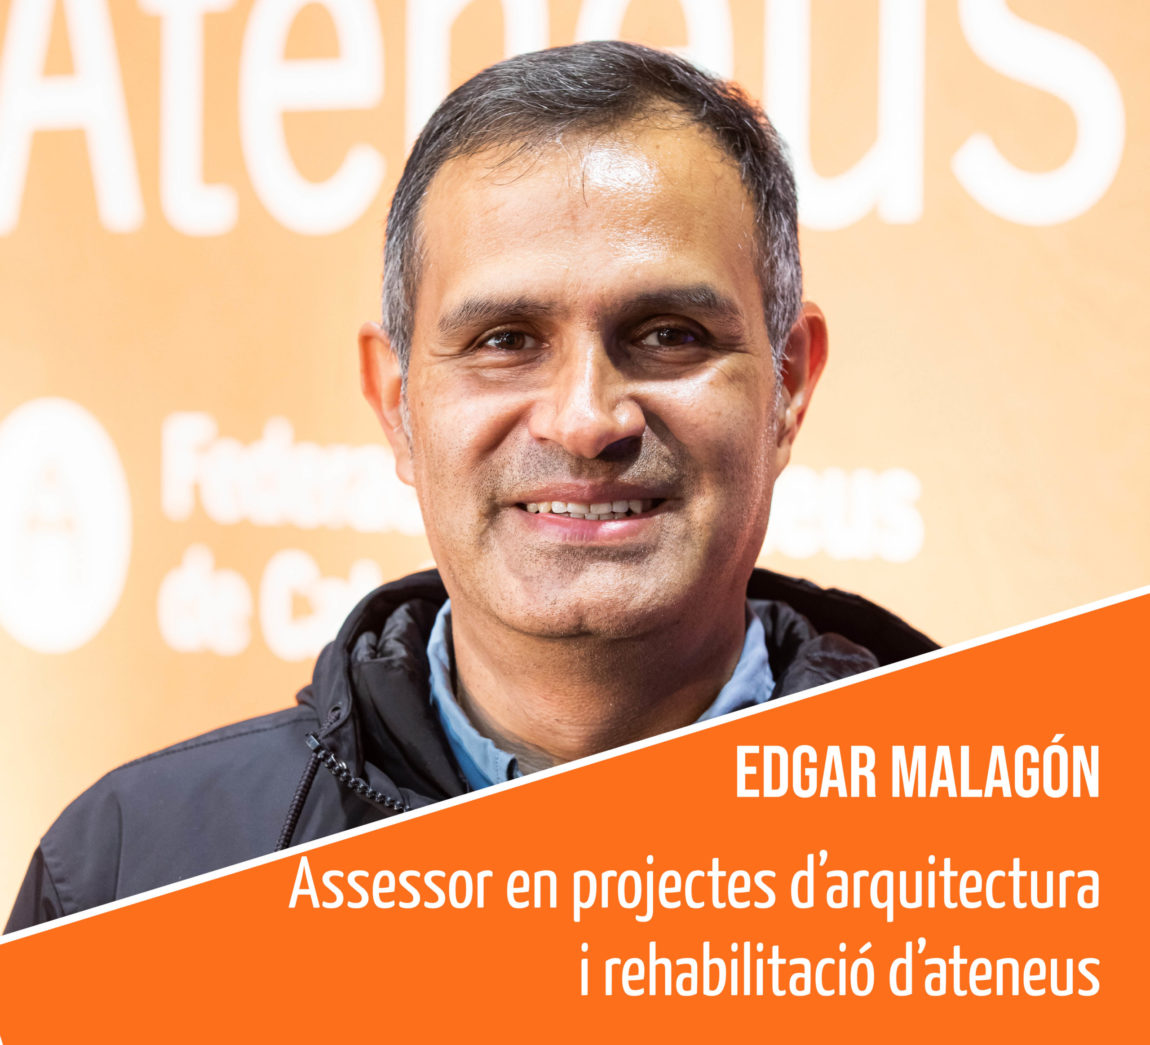 Coneix l’equip humà de la FAC: Edgar Malagón, assessor en projectes d’arquitectura i rehabilitació d’ateneus